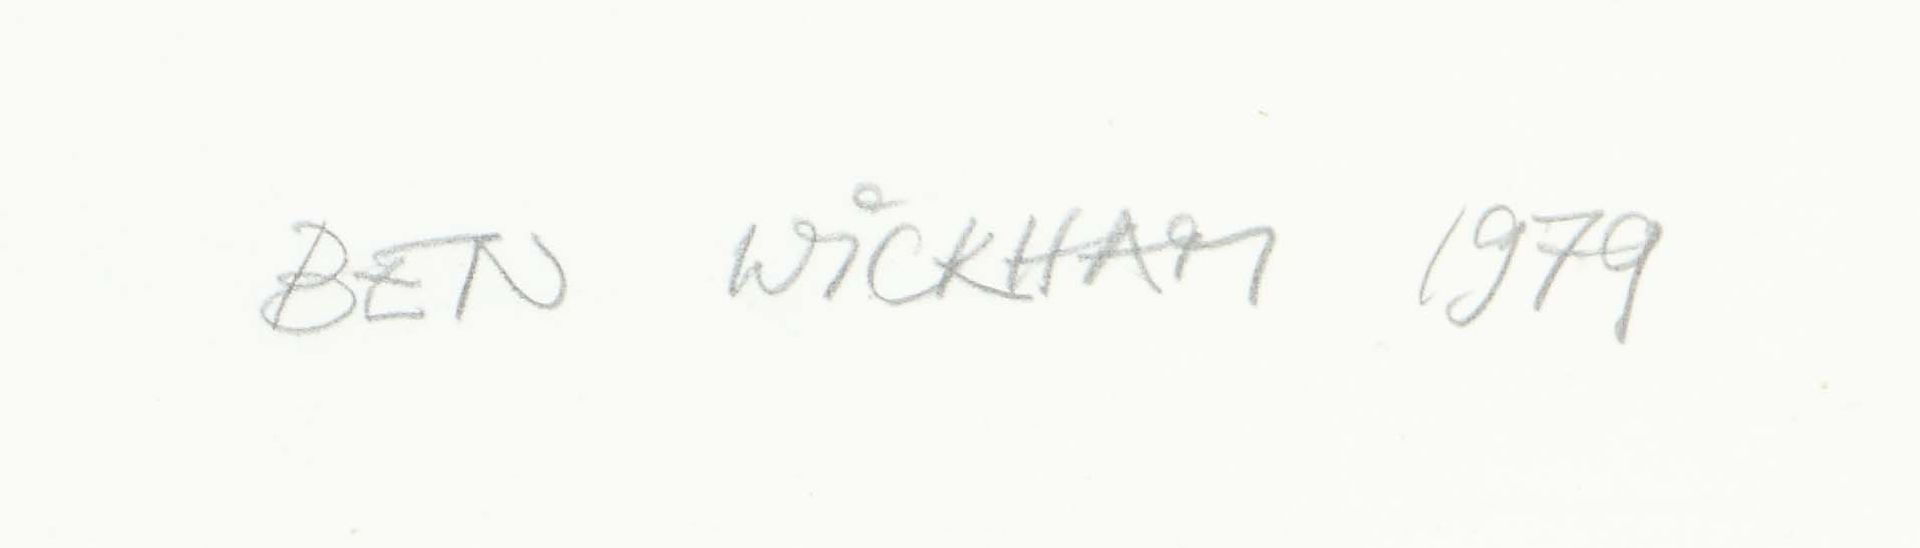 Wickham, Ben Künstler des 20. Jh. - Bild 3 aus 4